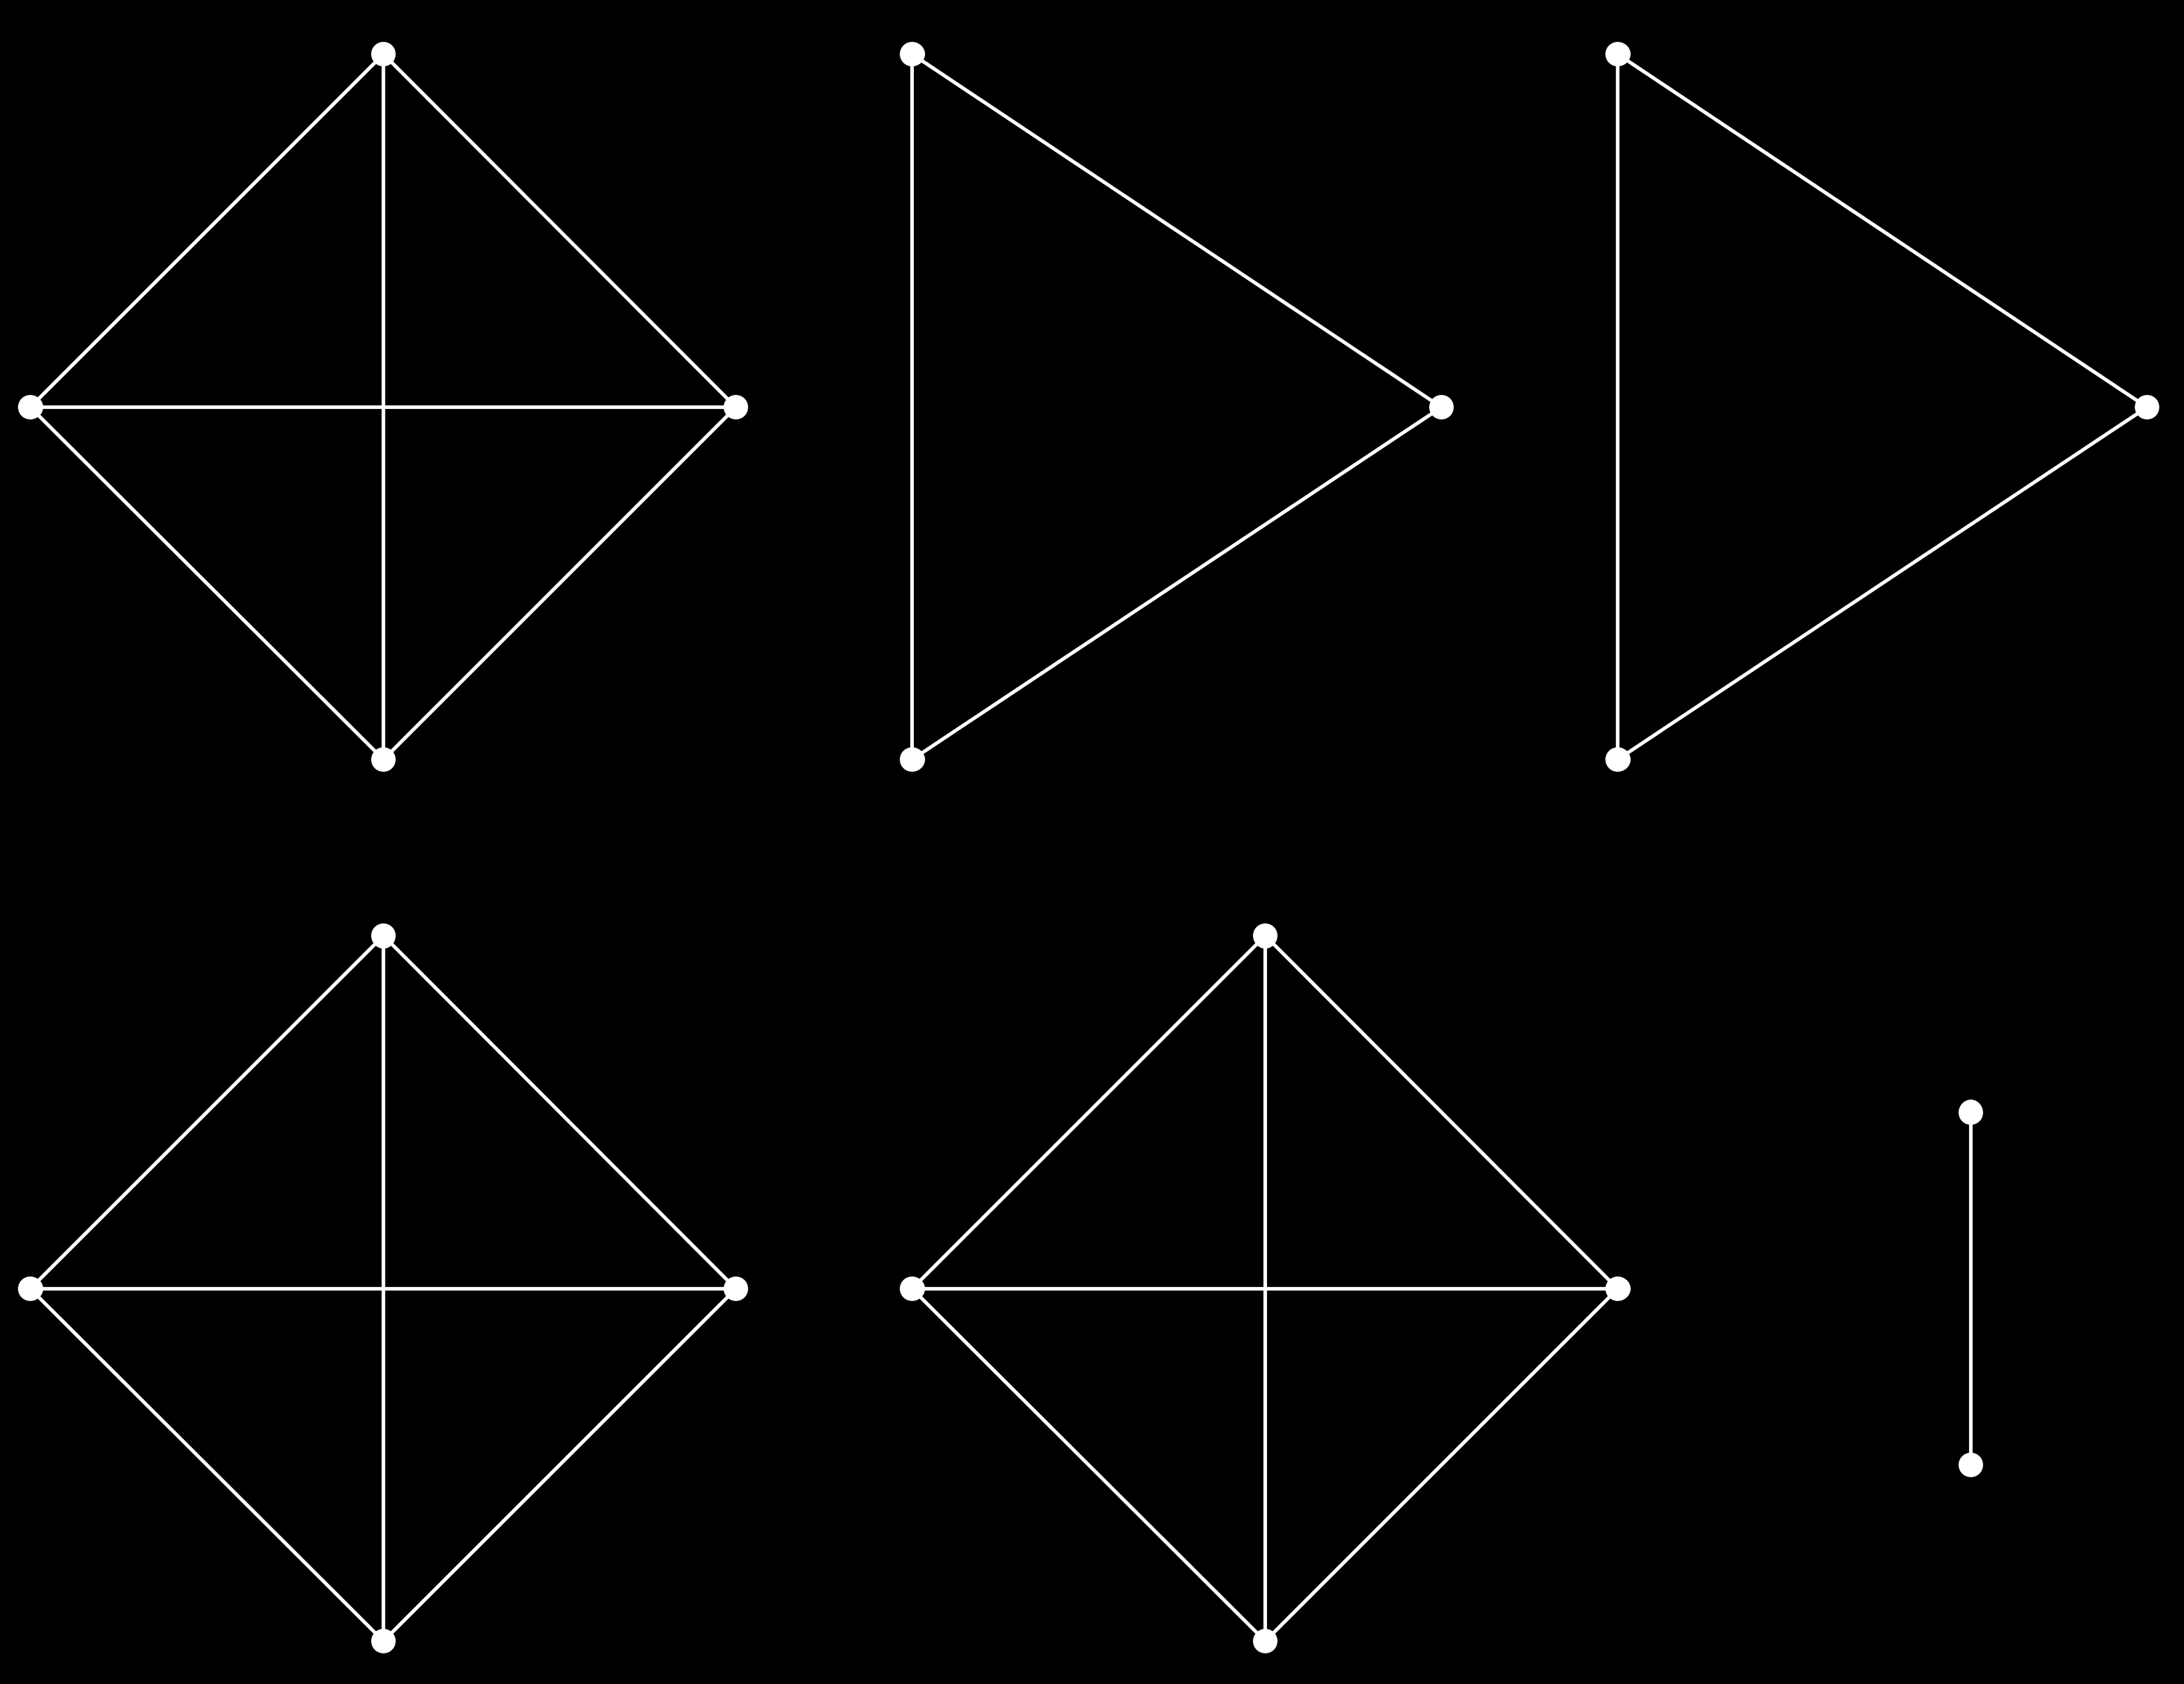 19 Consideremos um grafo de 10 vértices e 11 arestas. Queremos provar que existe um subconjunto de 5 desses vértices com no máximo 1 aresta.